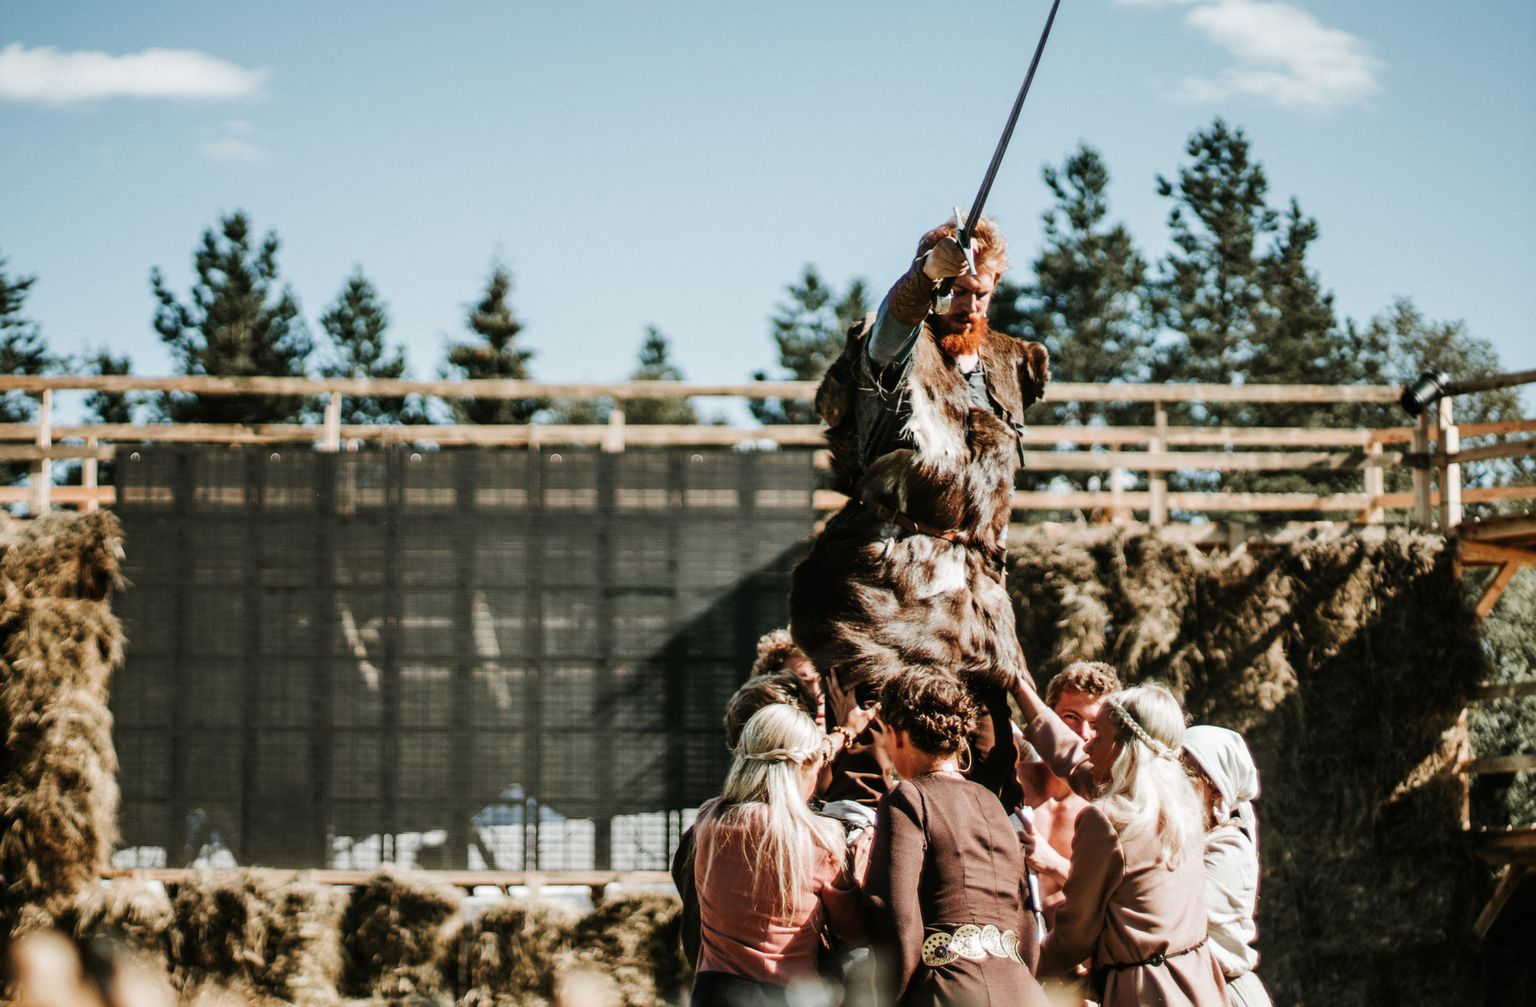 Lõhavere linnamäel etendus augustis Peep Maasiku lavastus «Lembitu-kuningas ilma kuningriigita», peaosas Ott Kartau.